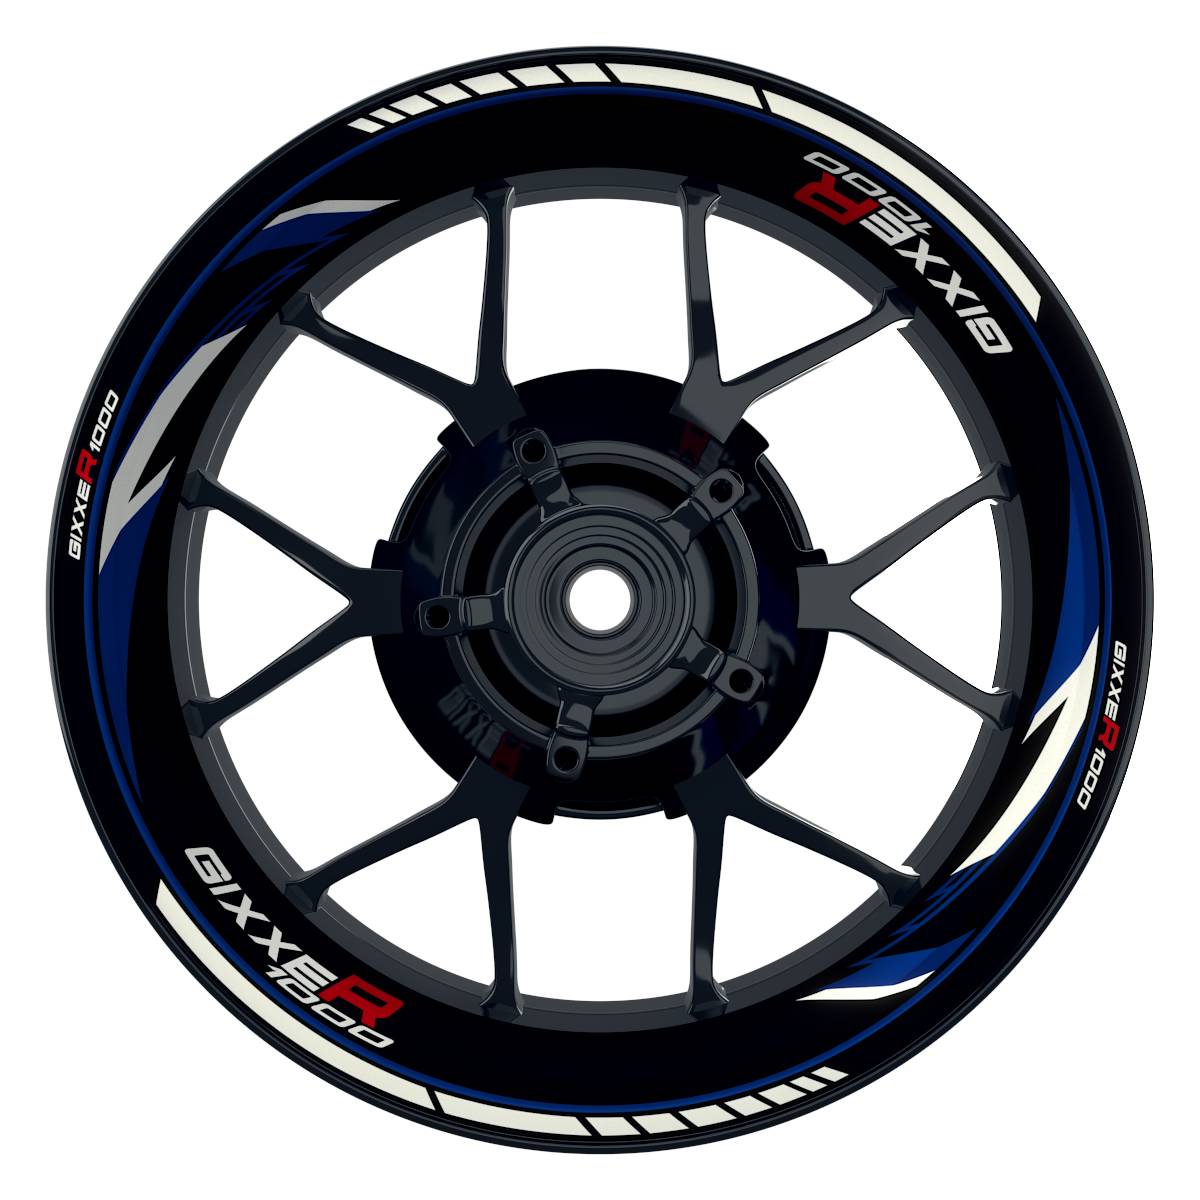 GIXXER1000 Razor schwarz blau Wheelsticker Felgenaufkleber